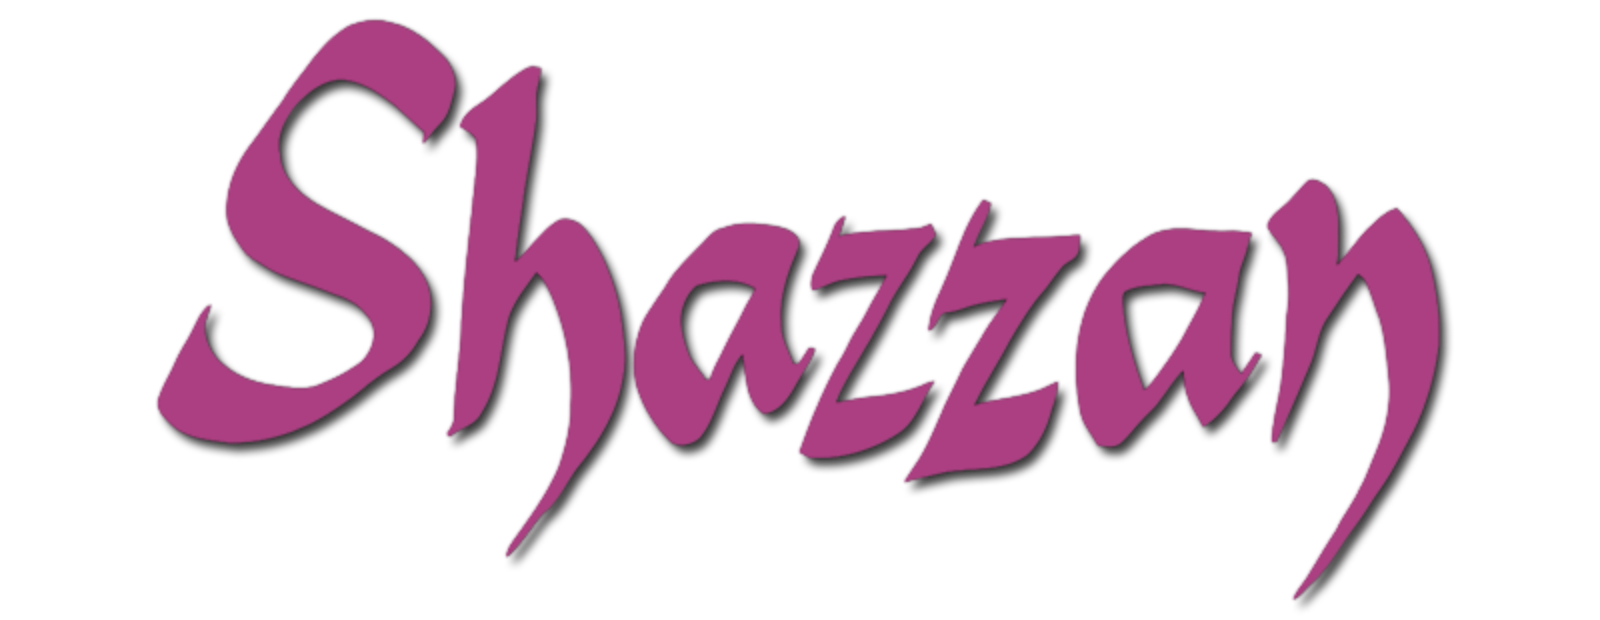 Shazzan Complete 